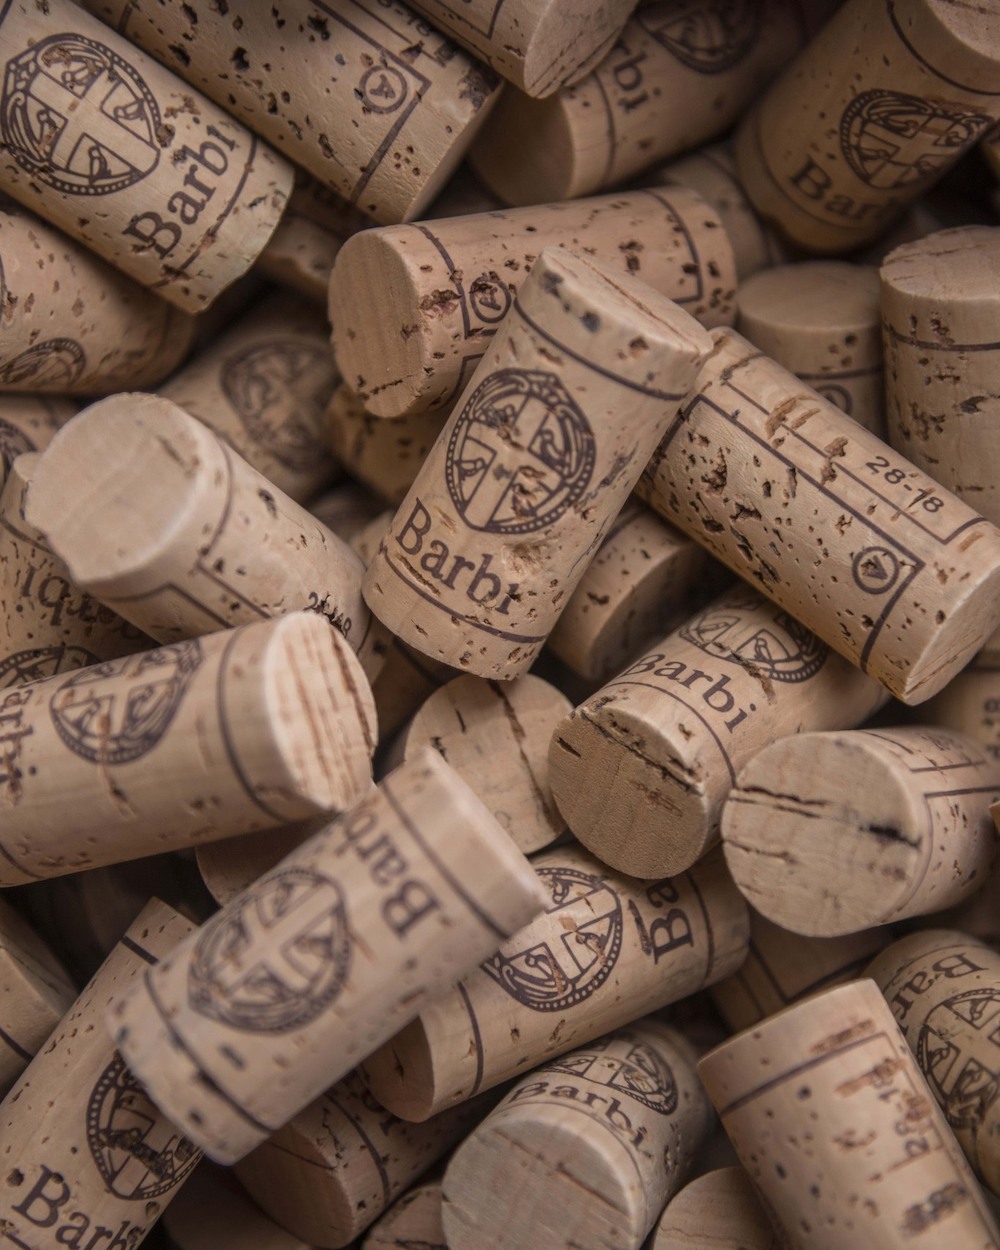 Tappi delle bottiglie di vino della Fattoria dei Barbi, Montalcino, Toscana